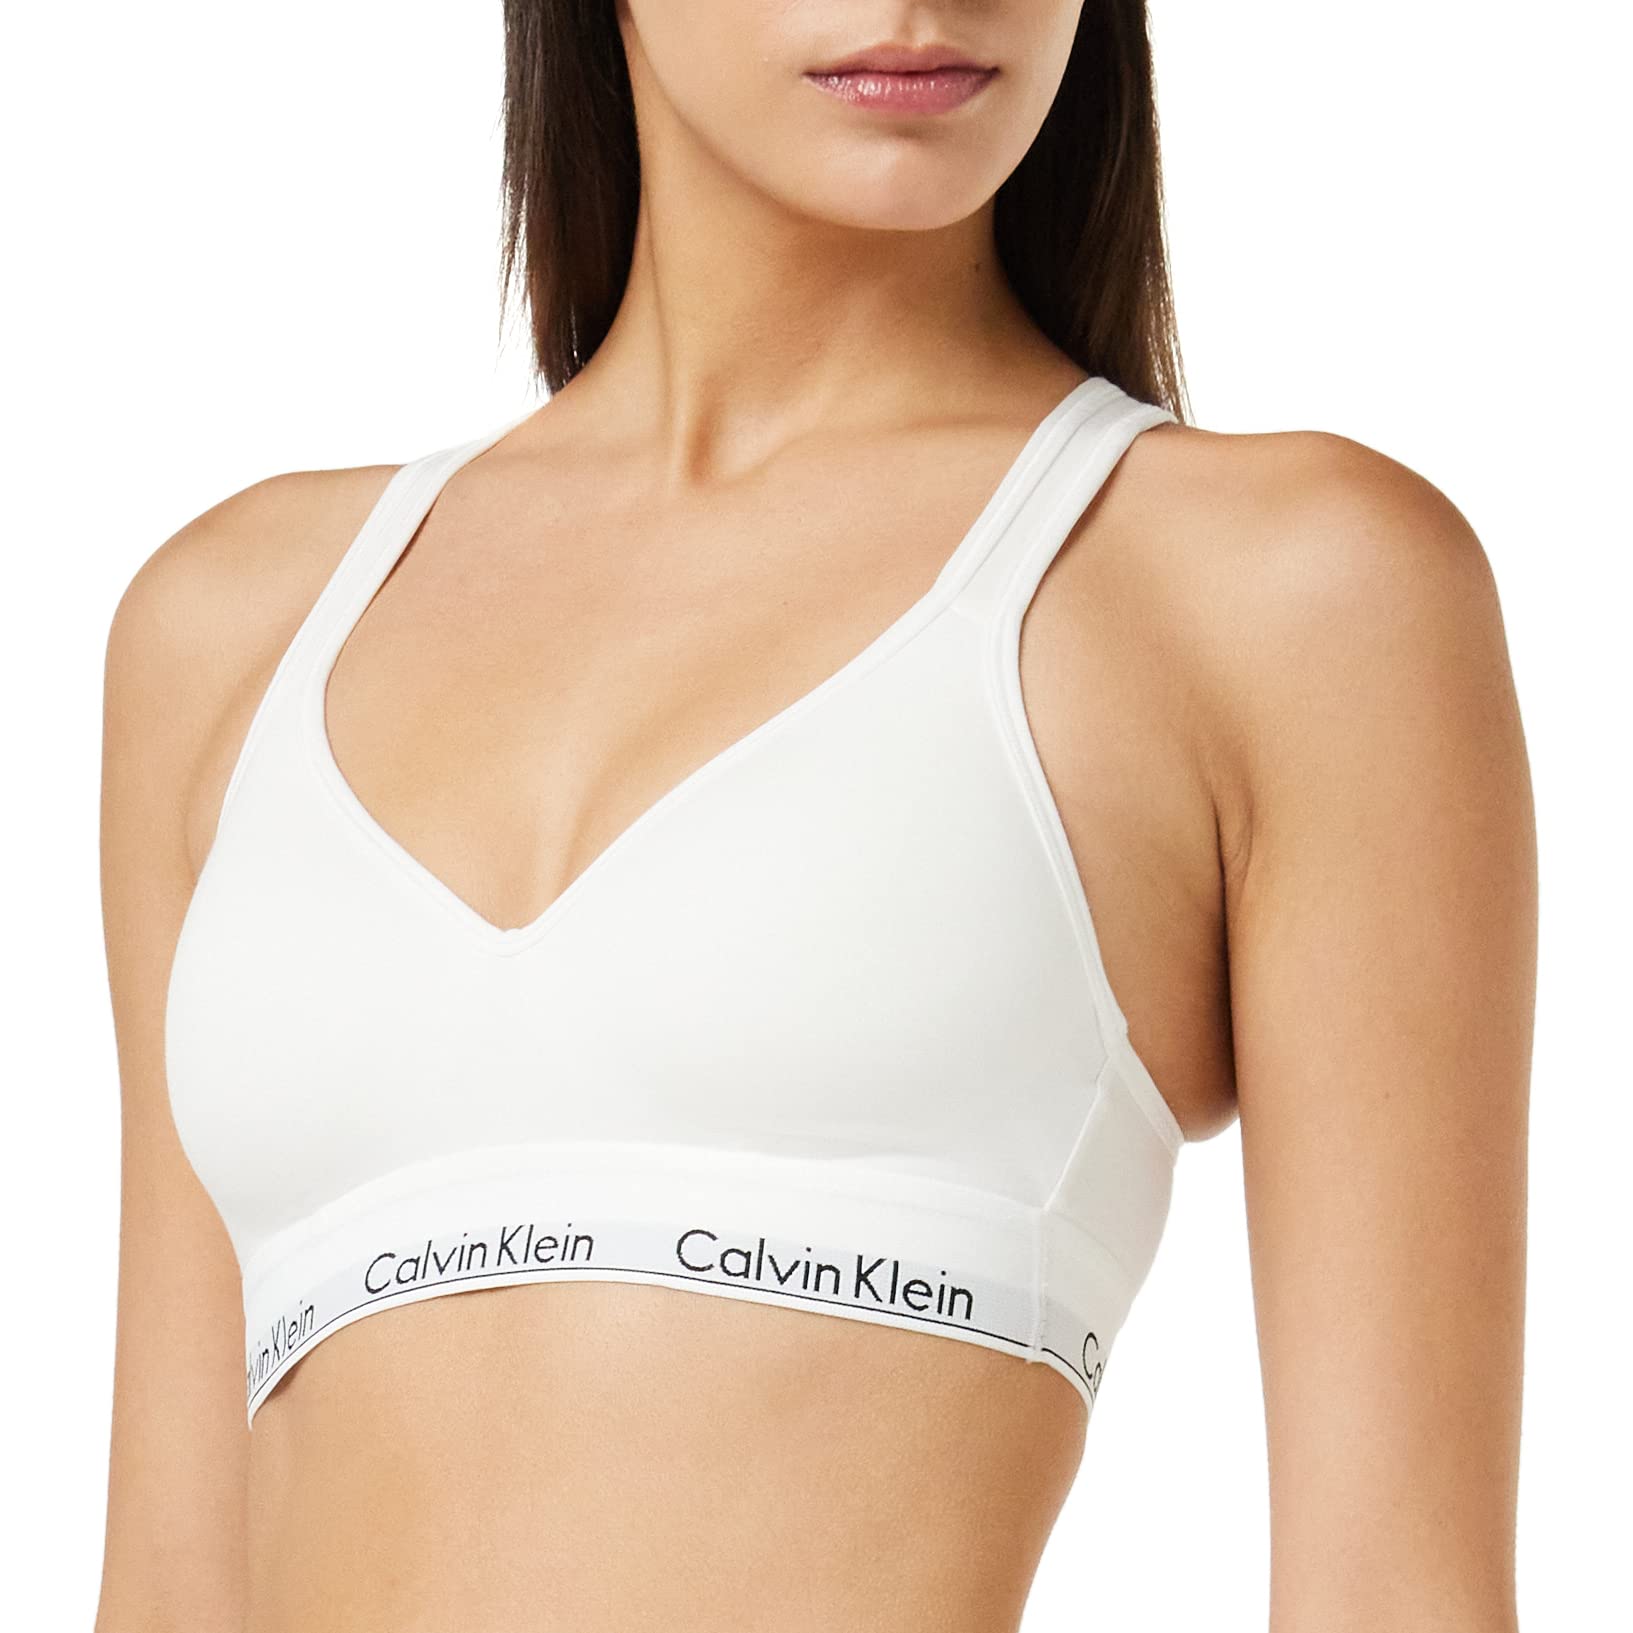 Calvin Klein Damen BH Bralette Lift Gepolstert , Weiß (White), M